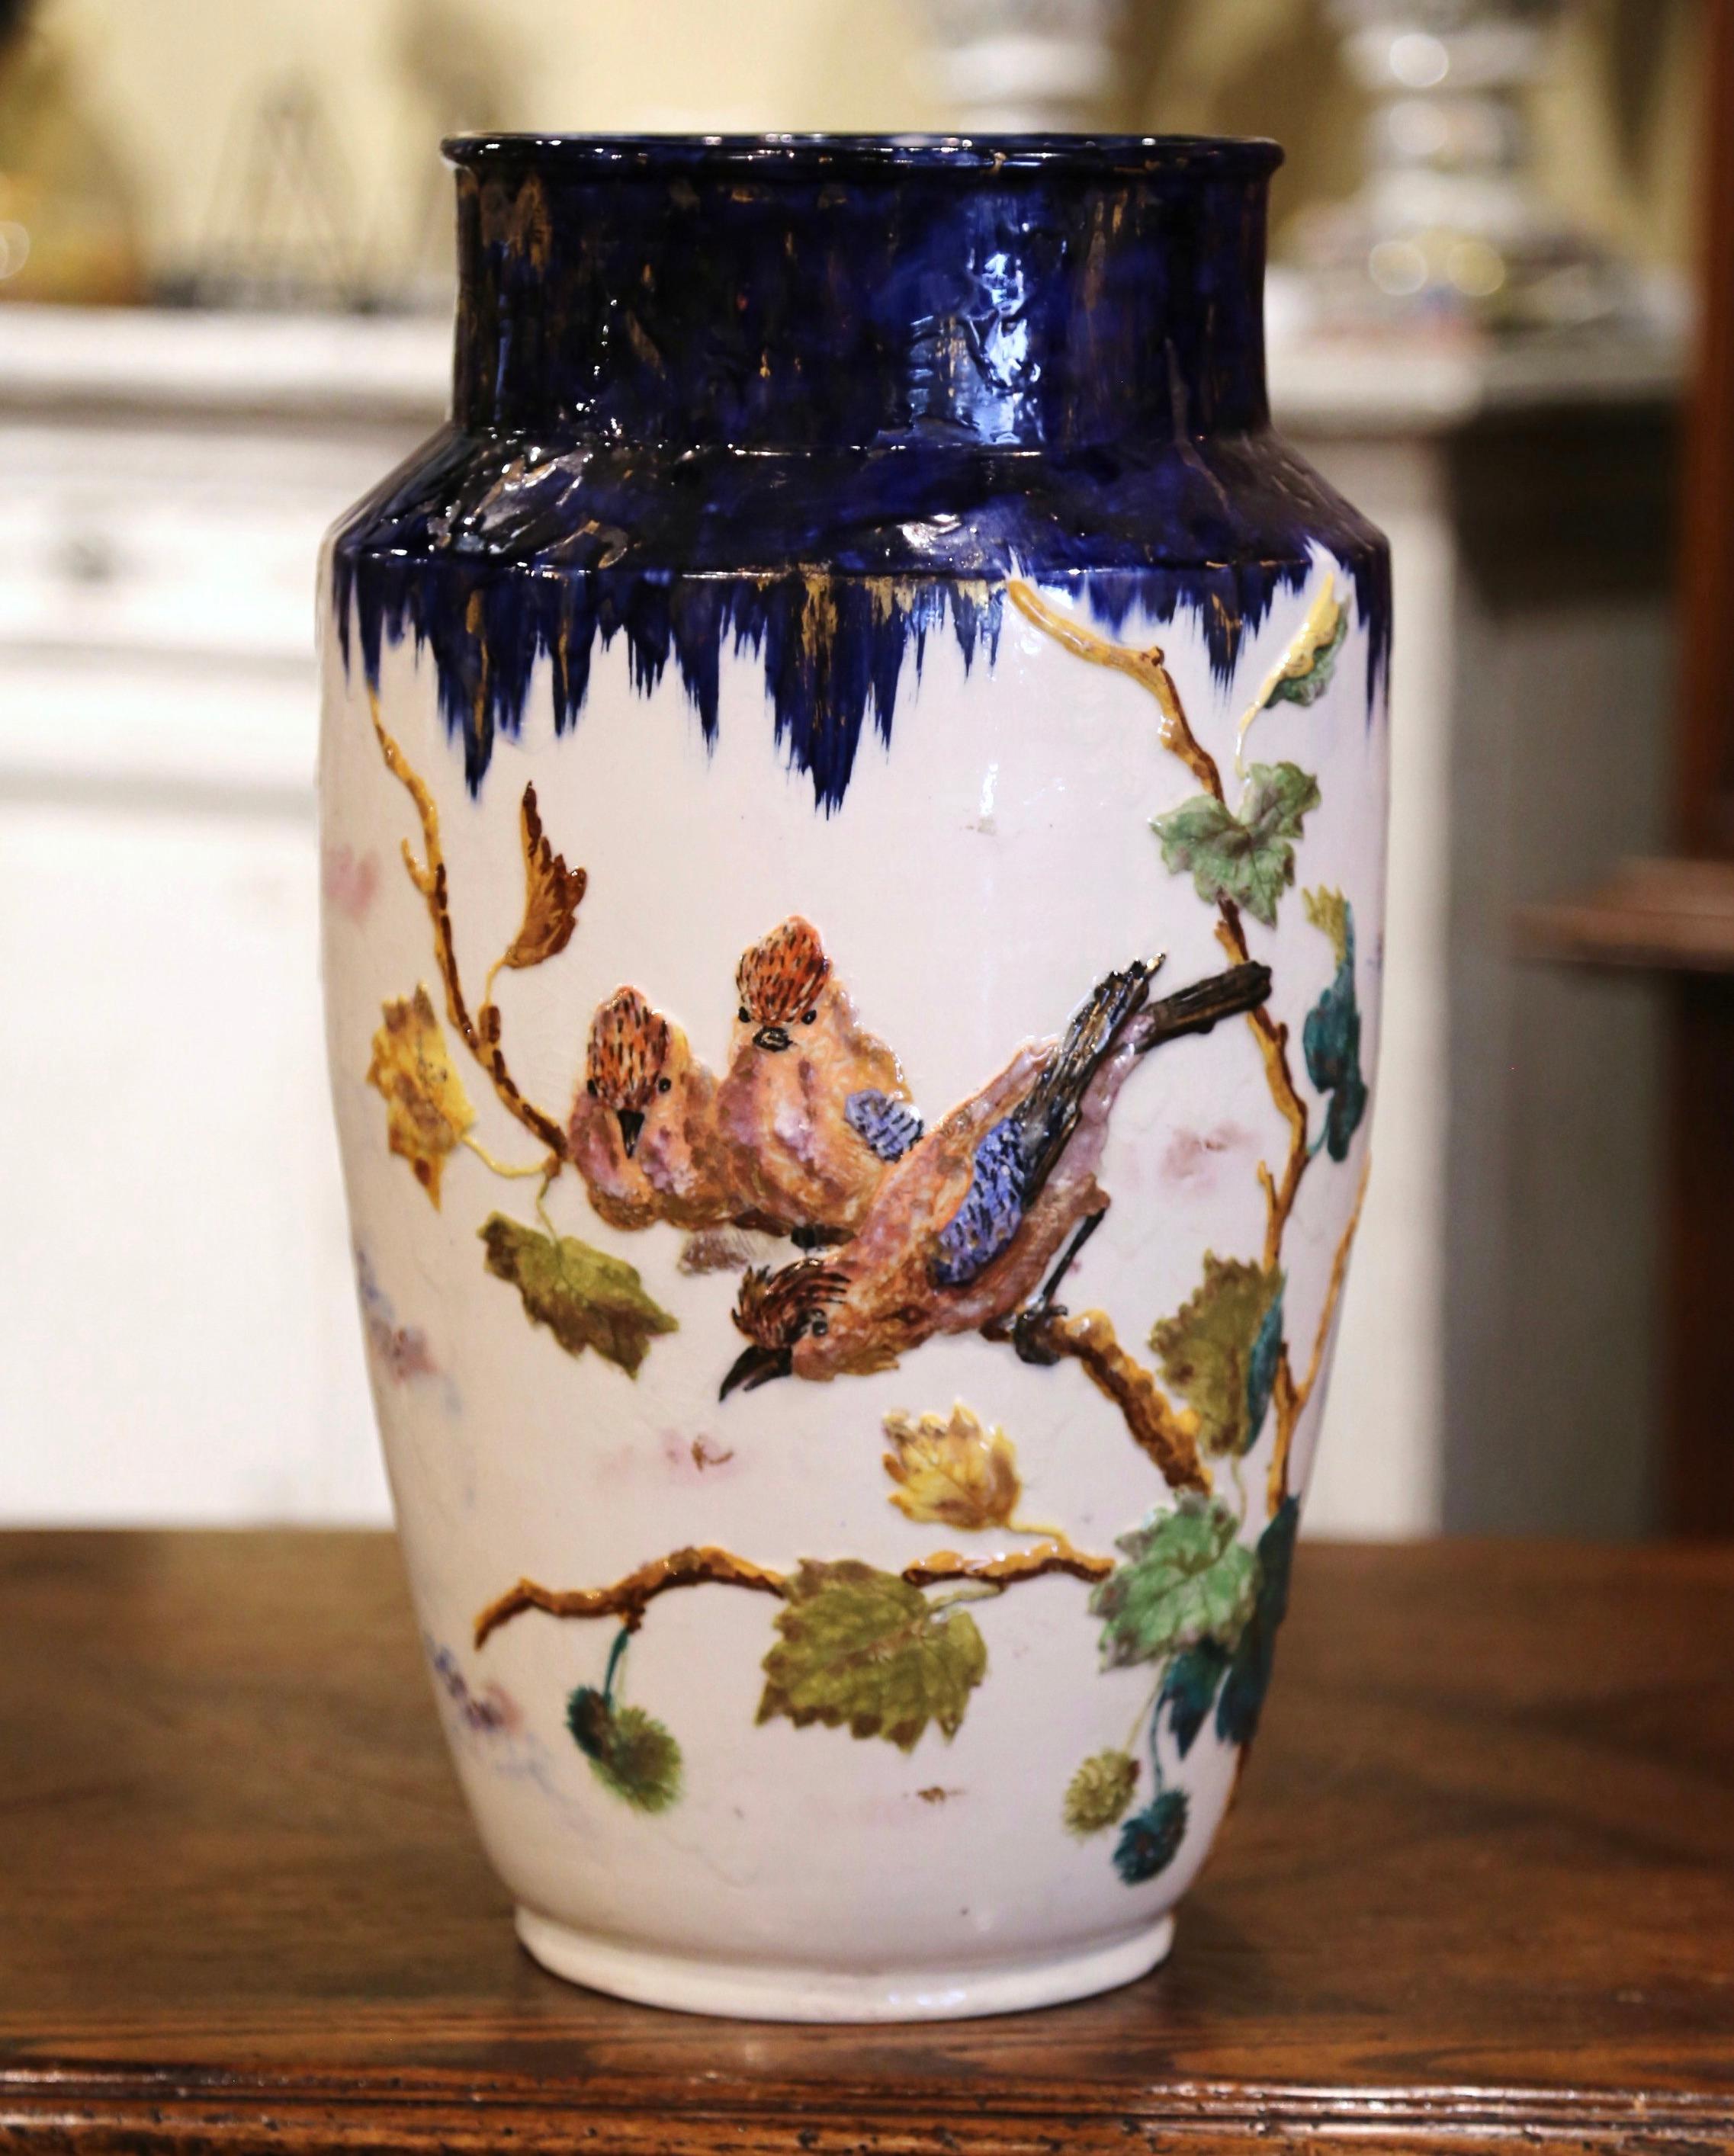 Ce vase ancien élégant et coloré a été créé à Longchamp, en Bourgogne, vers 1890. De forme ronde avec des épaules hautes et inclinées et un corps effilé vers la base, ce grand récipient en céramique présente des motifs d'oiseaux et de feuillages